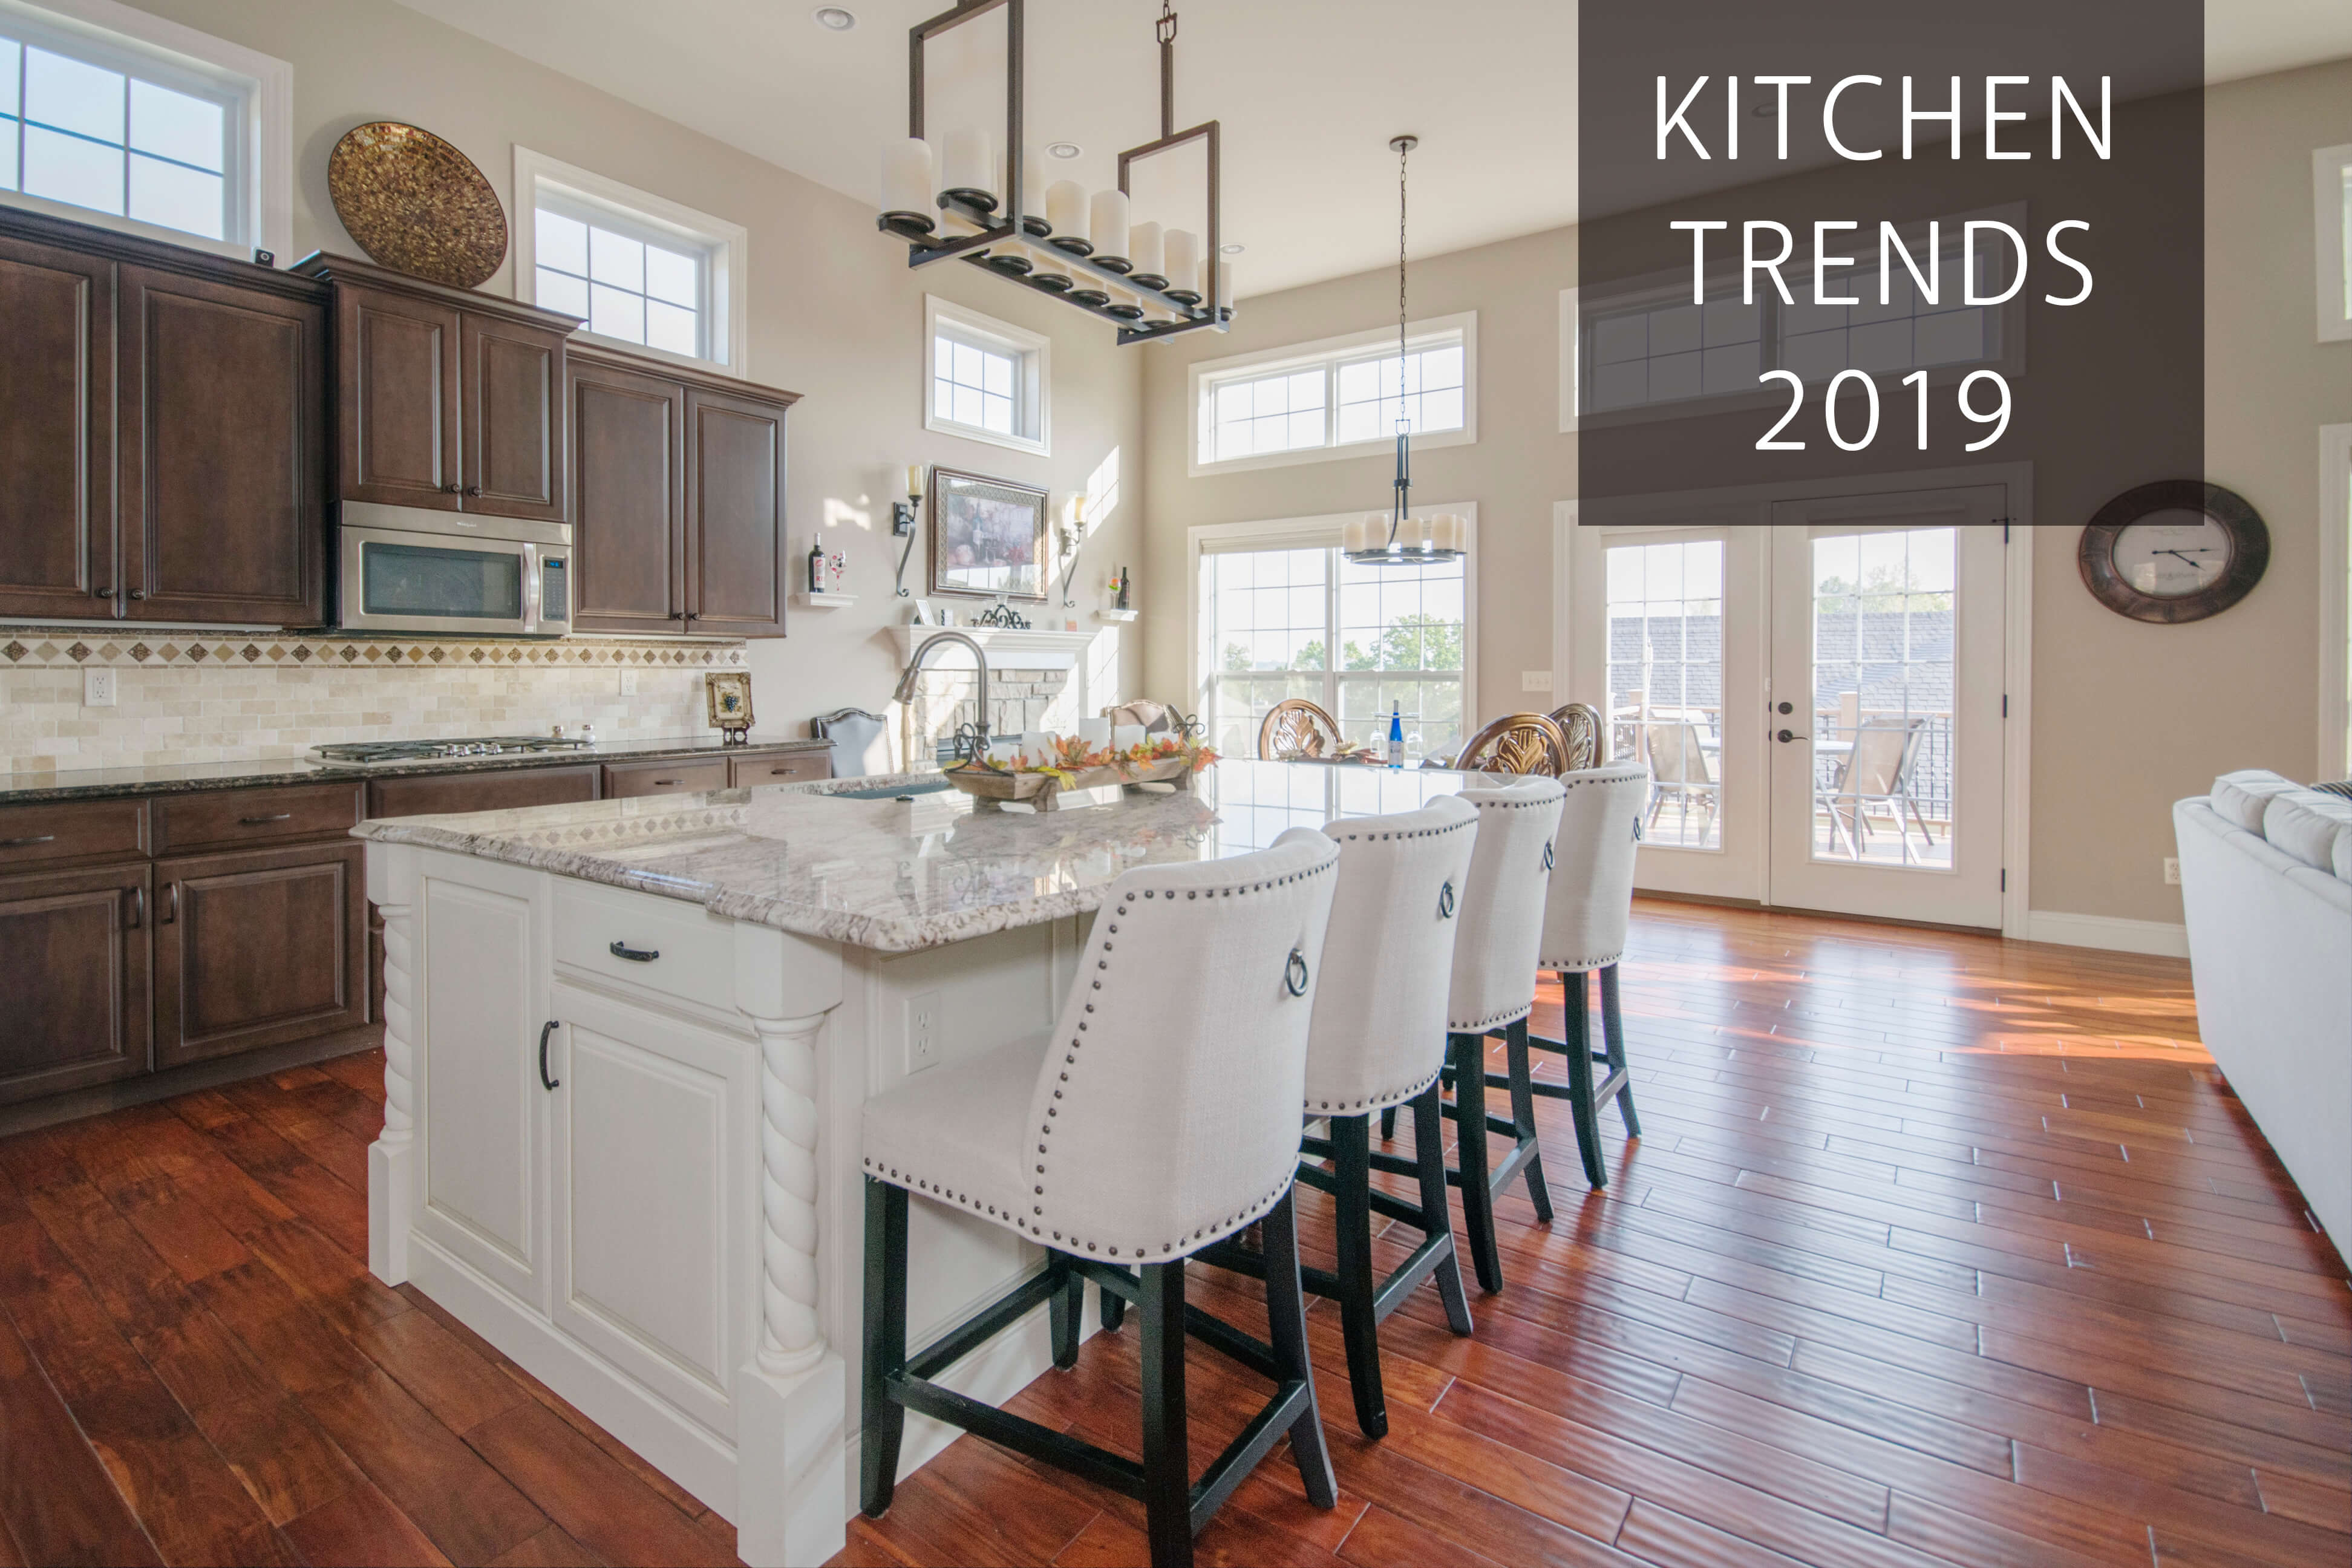 Top 5 Kitchen Trends in 2019 - Williams Kitchen & Bath